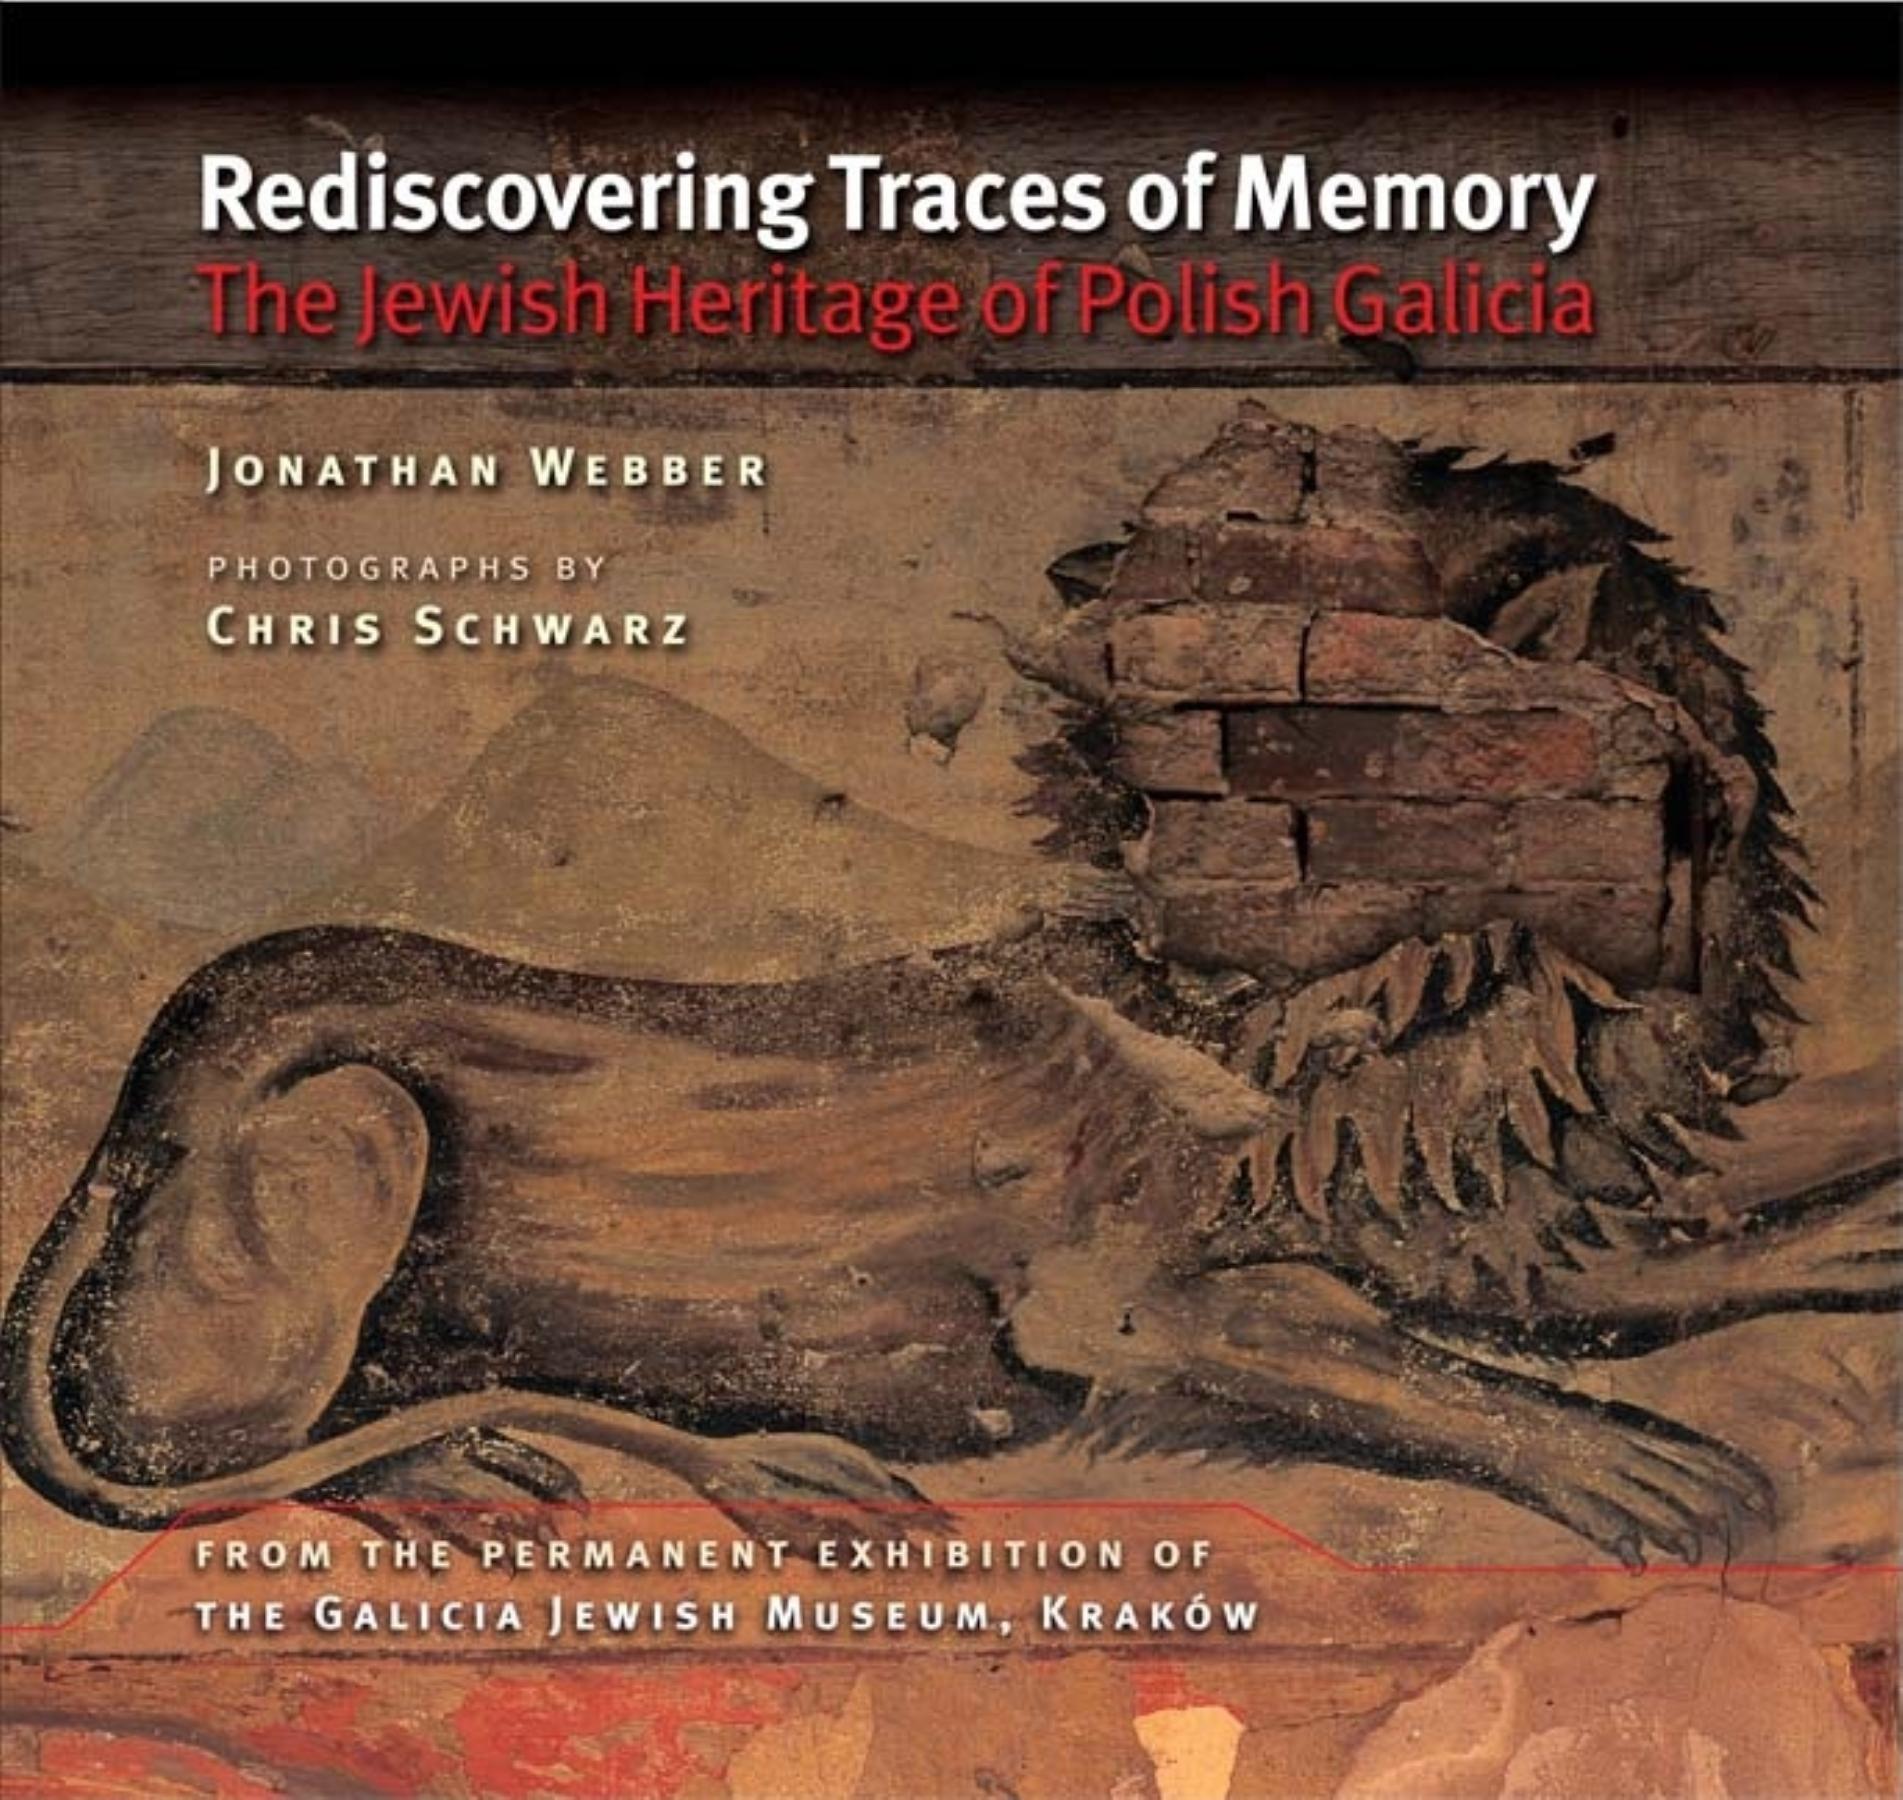 REDISCOVERING TRACES OF MEMORY / Jonathan Webber / Taschenbuch / Kartoniert / Broschiert / Englisch / 2009 / INDIANA UNIV PR / EAN 9780253221858 - Webber, Jonathan